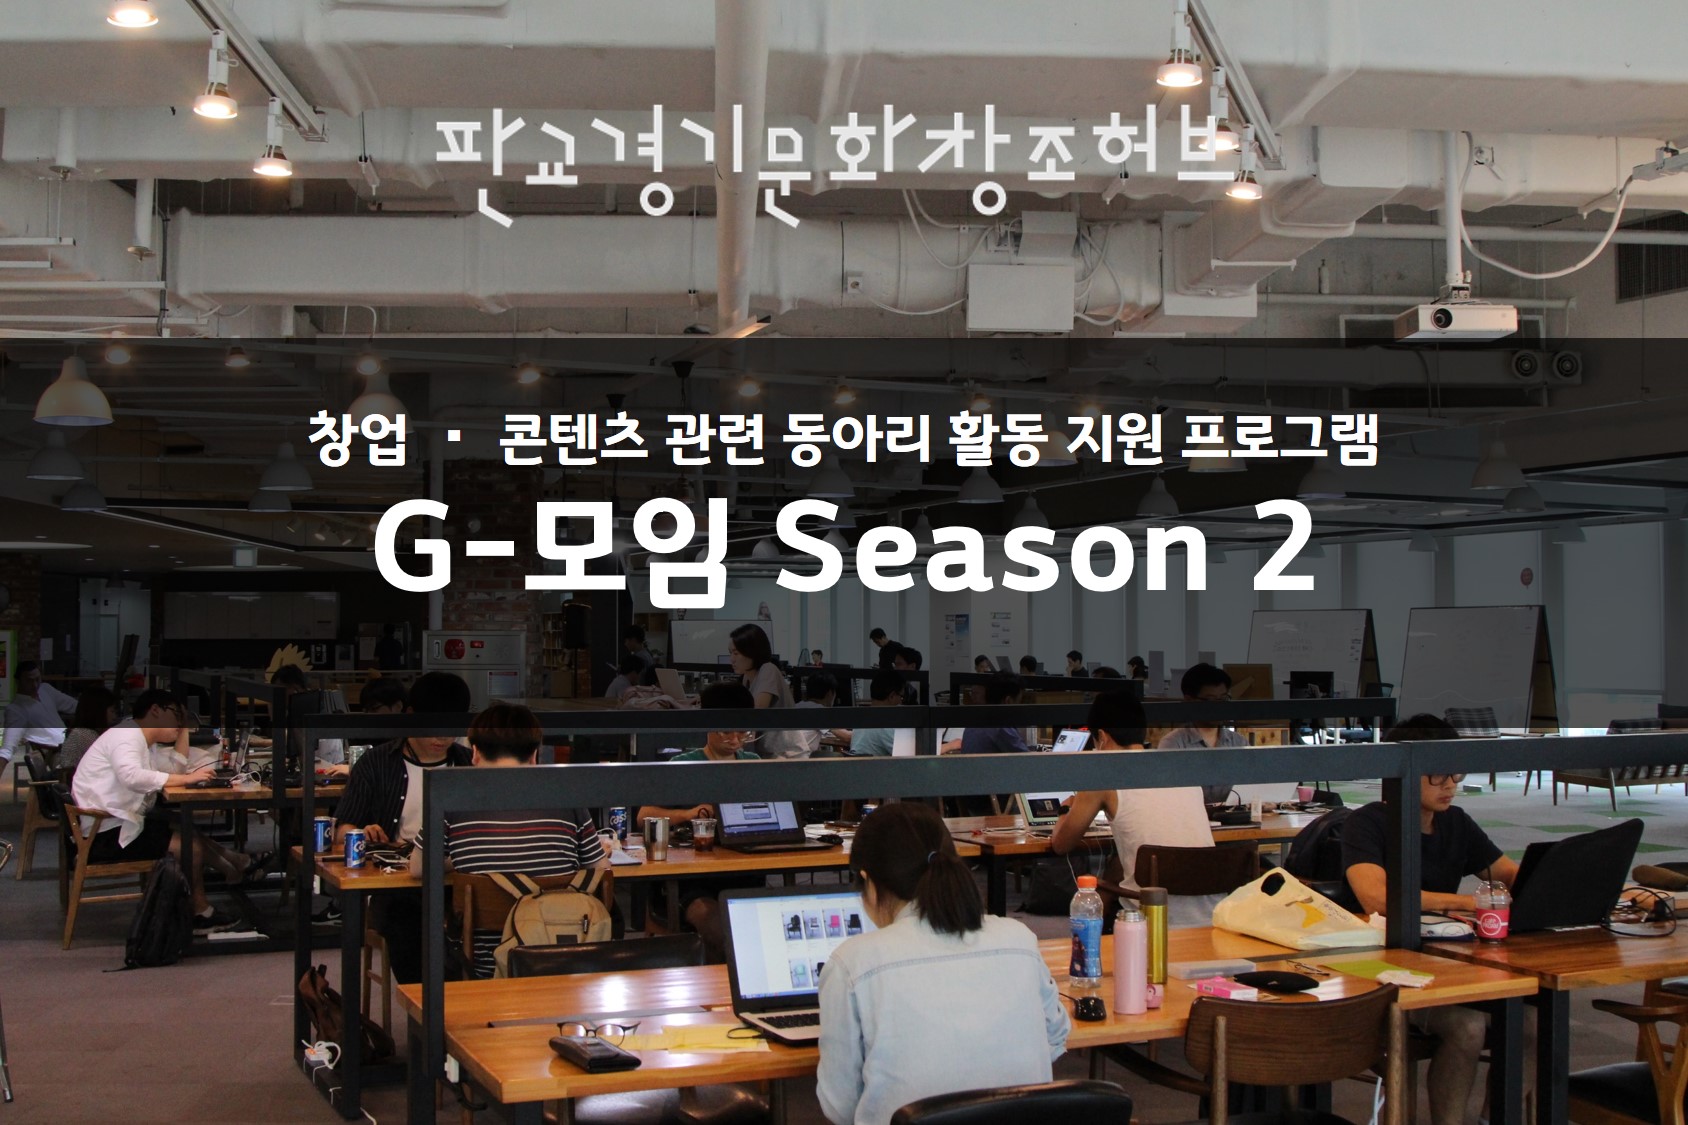 창업 및 콘텐츠 관련 동아리 활동 지원 프로그램 G-모임 시즌 2